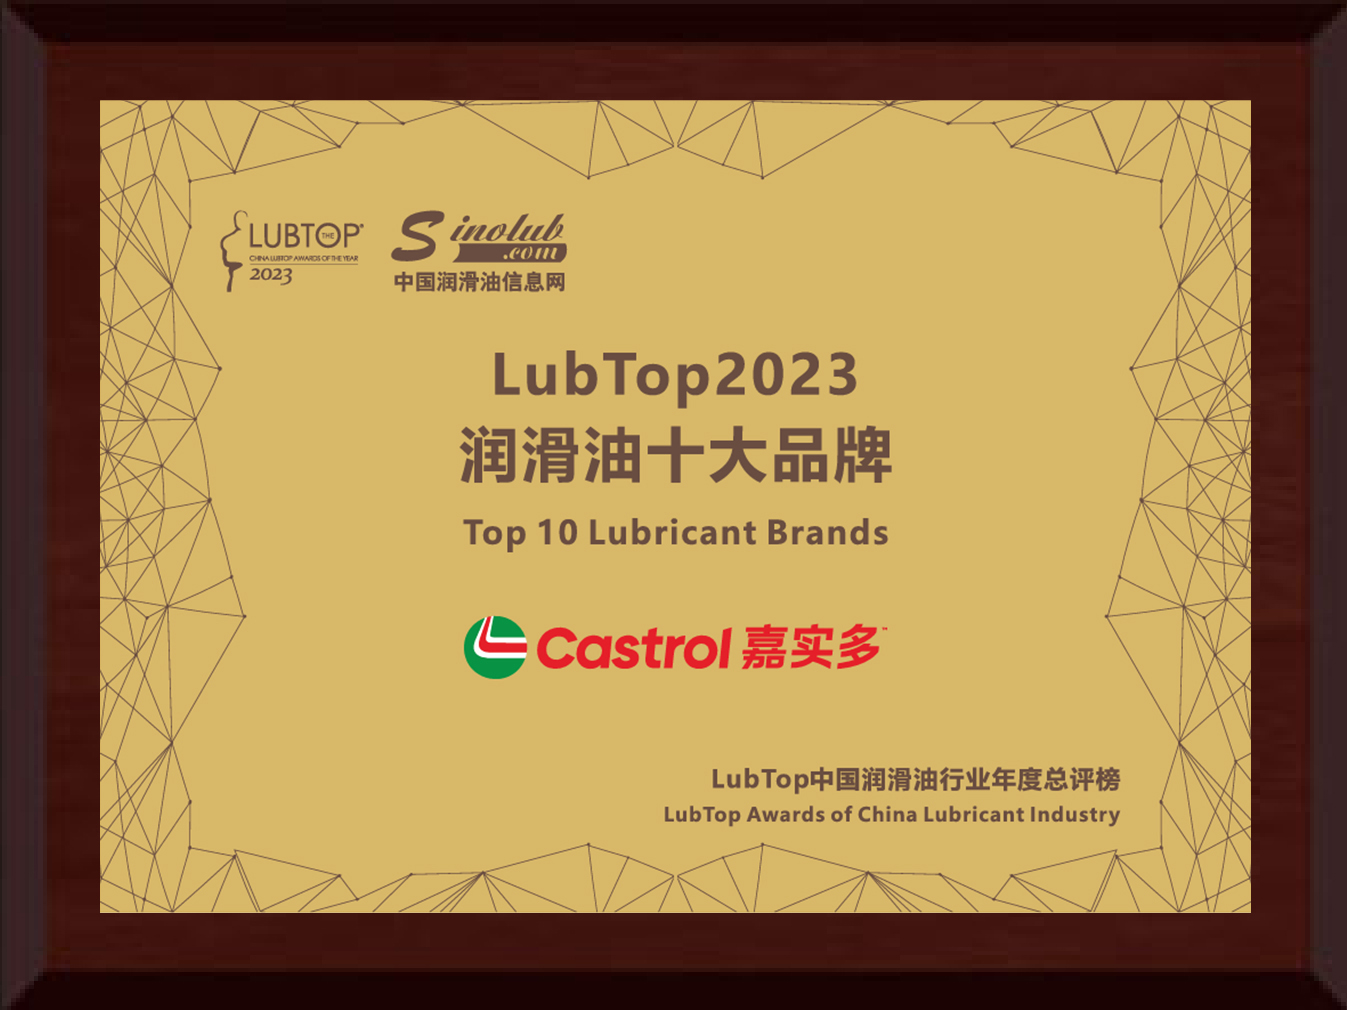 嘉实多斩获“LubTop2023中国润滑油行业年度总评榜”五大奖项